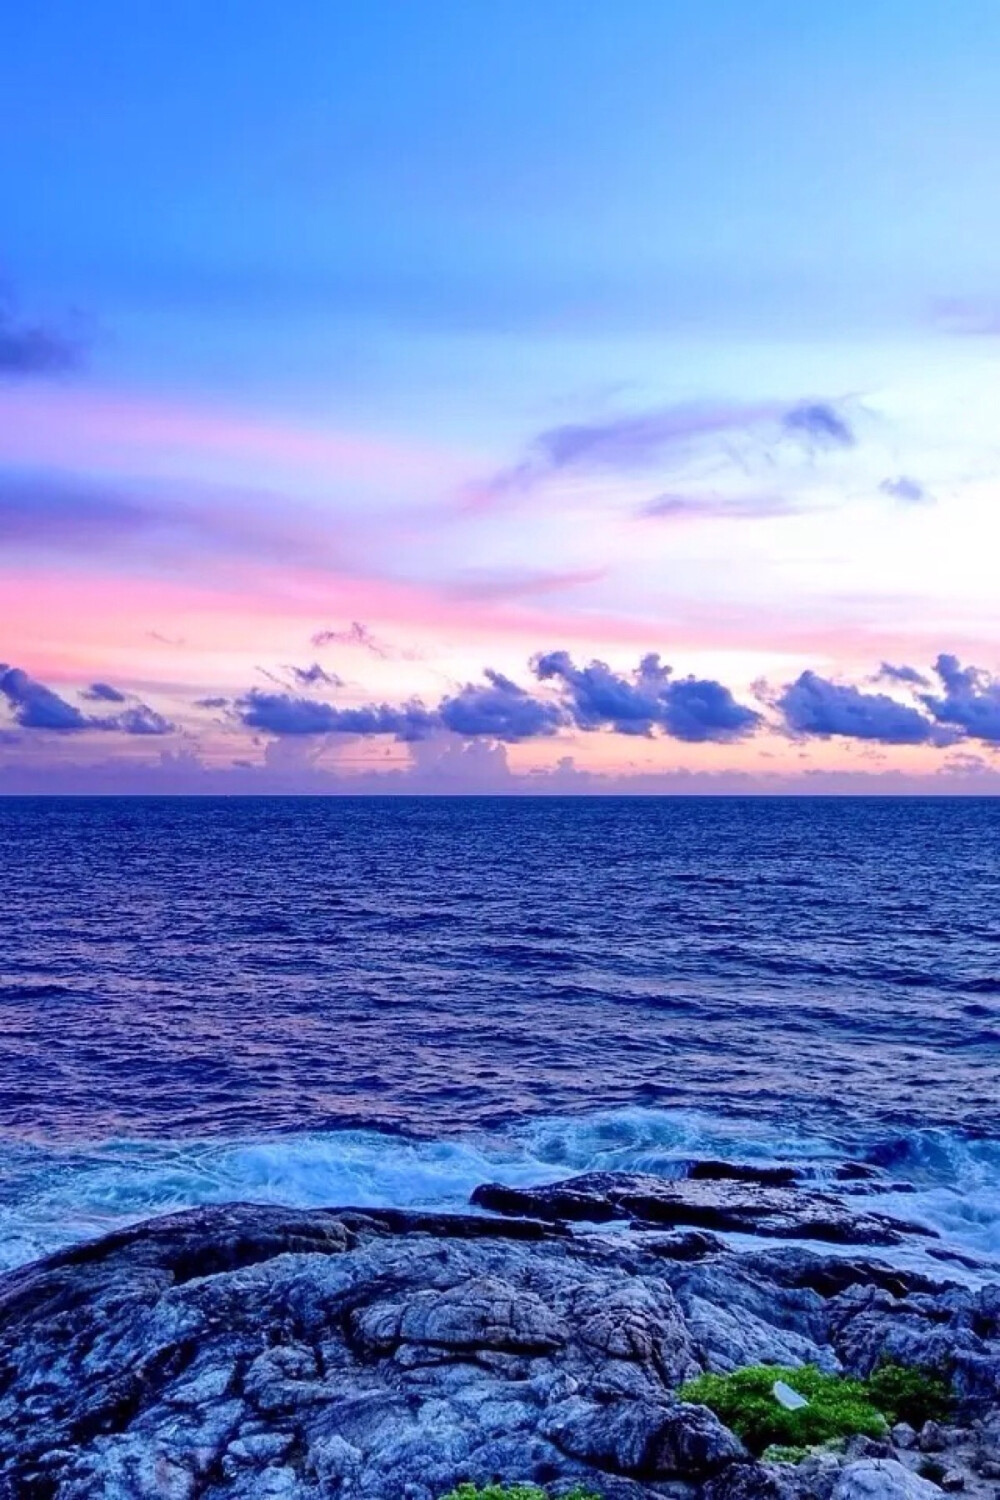 唯美自然风景 蓝天碧水 海洋iphone手机壁纸 唯美壁纸 锁屏